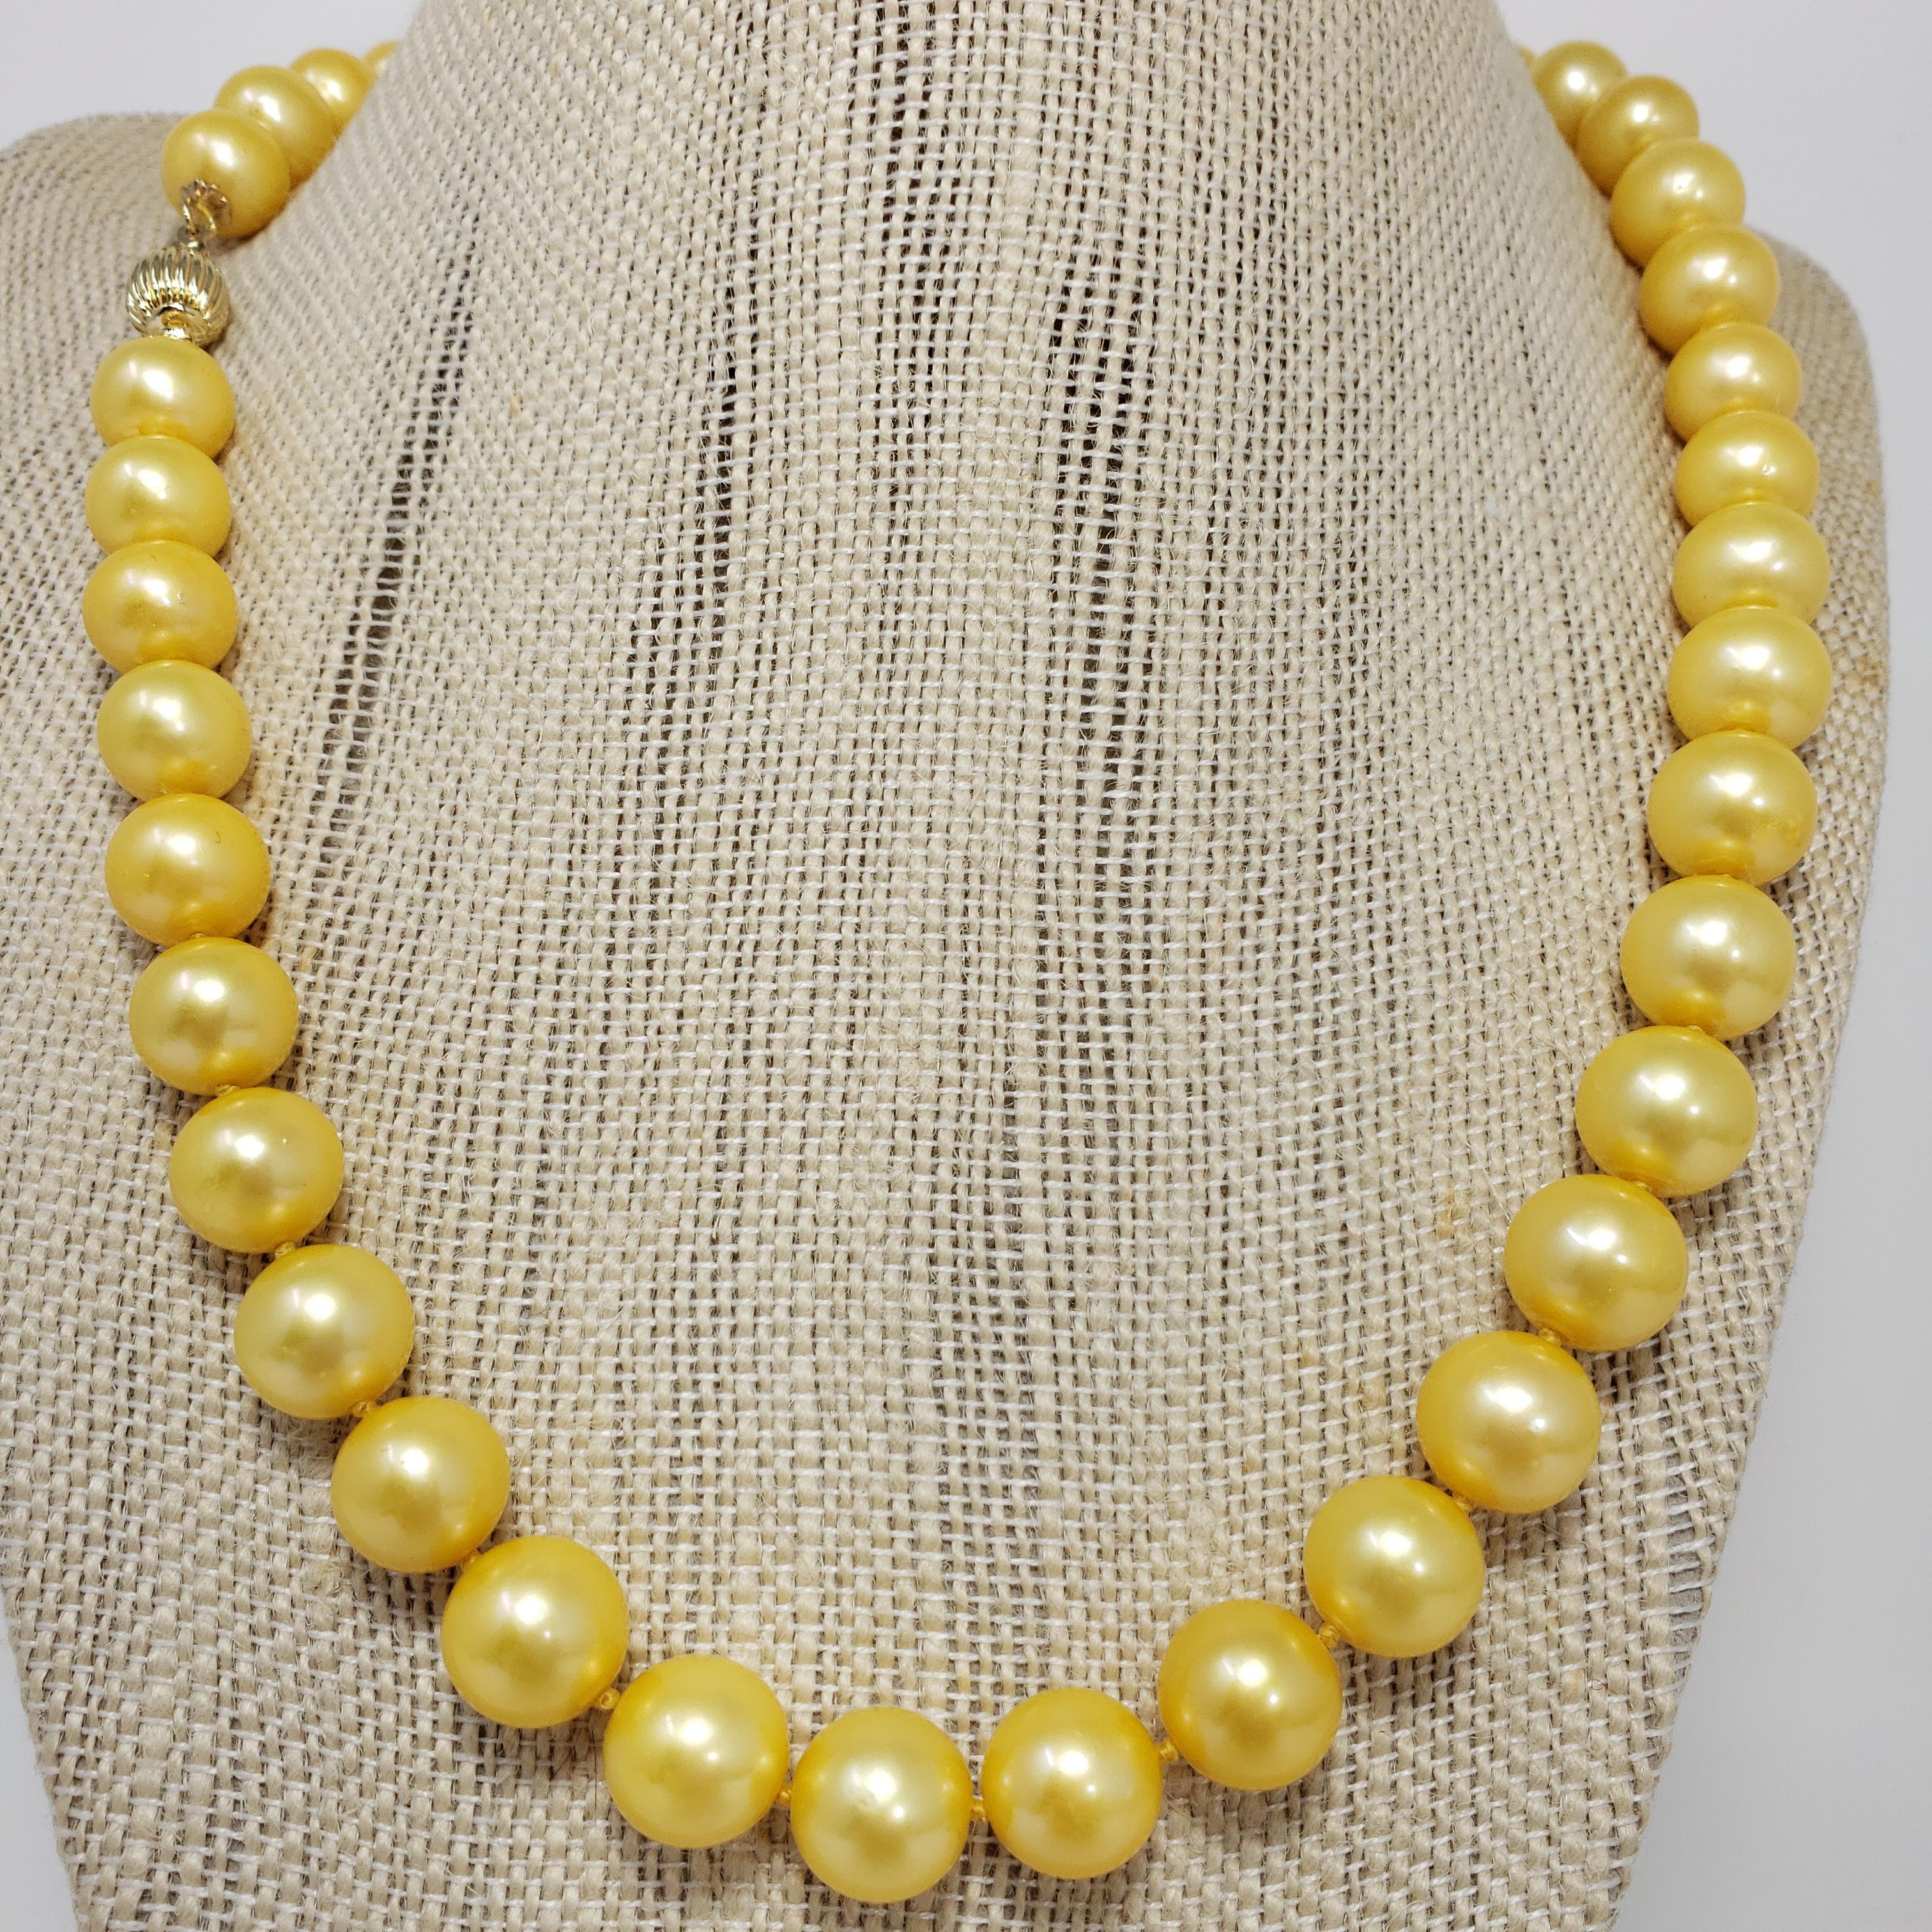 Un collier exquis, composé d'un seul rang de perles des mers du Sud, relié par un fermoir en or jaune 14K. Un éclat doré parfait pour tout style !

Poinçons : 14K
Perles d'environ 11 mm chacune